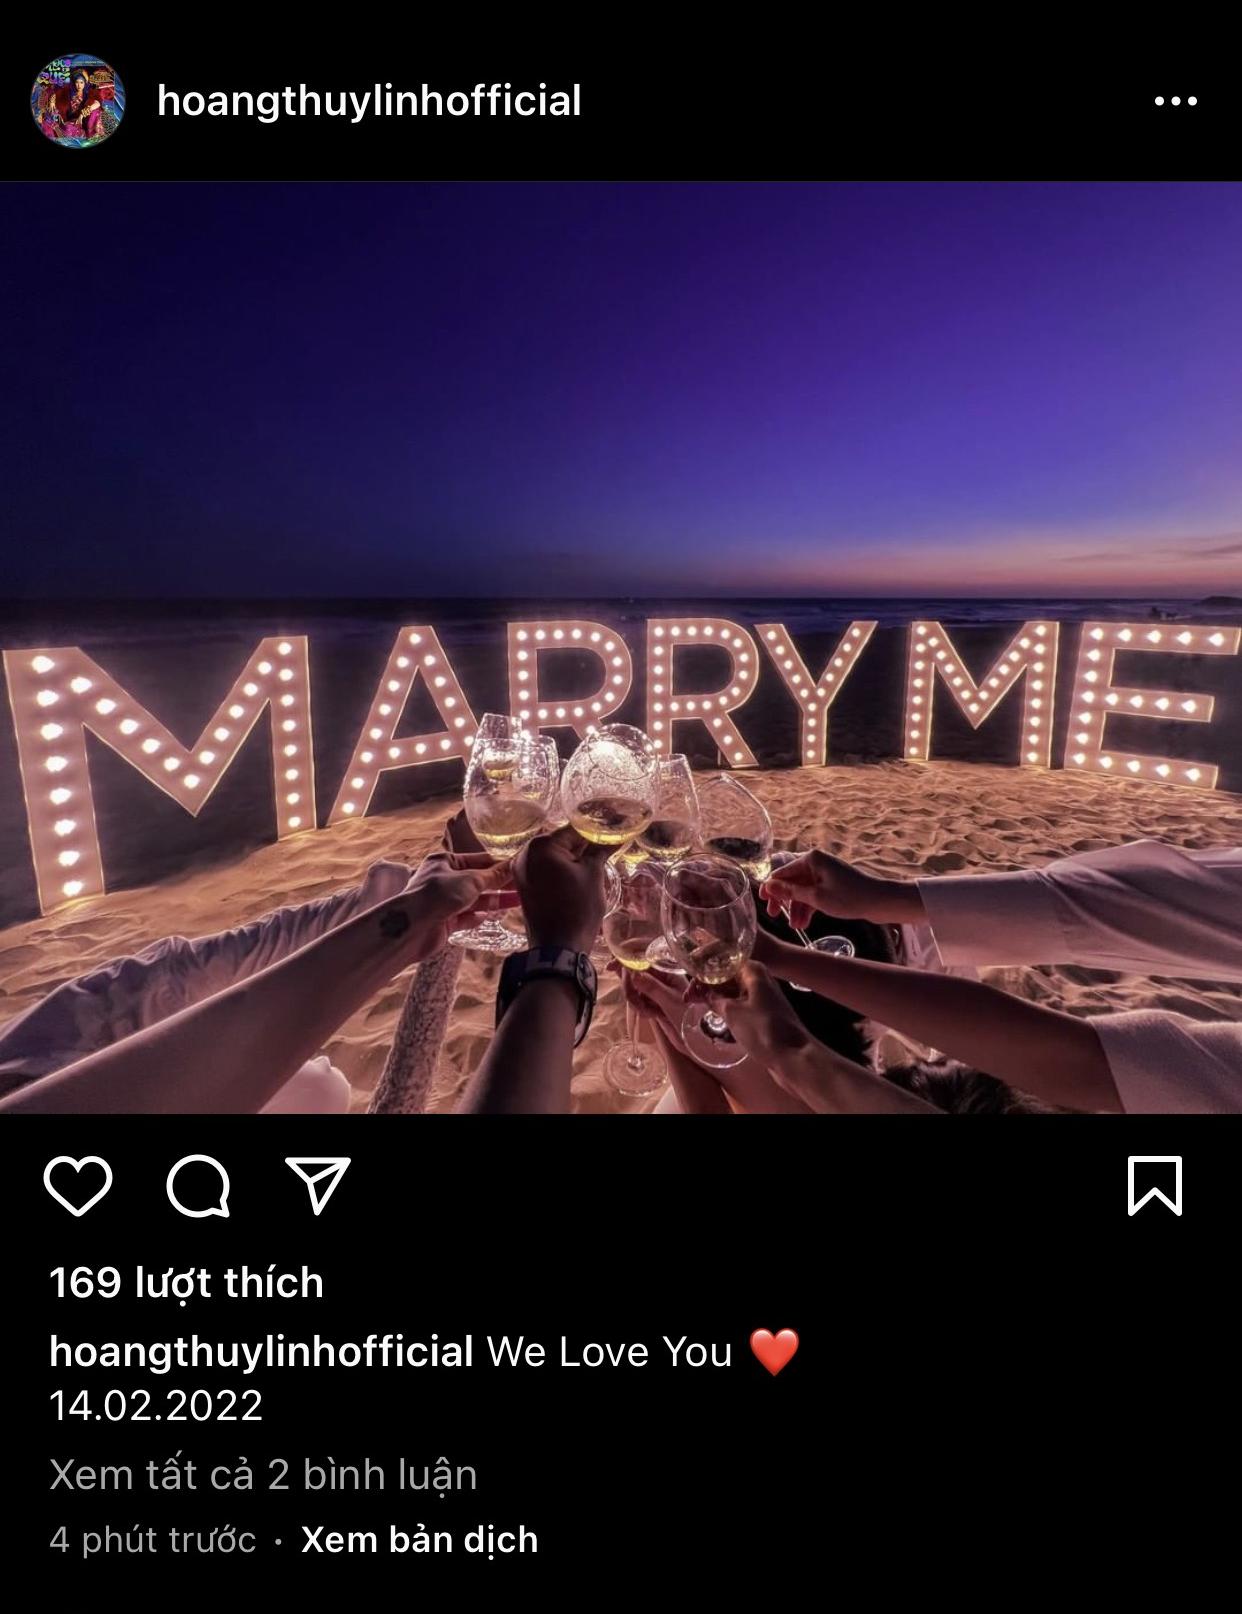 Hoàng Thùy Linh, Mai Phương Thúy, Minh Hằng đều đăng ảnh 'Marry Me', vậy ai cưới? - Ảnh 1